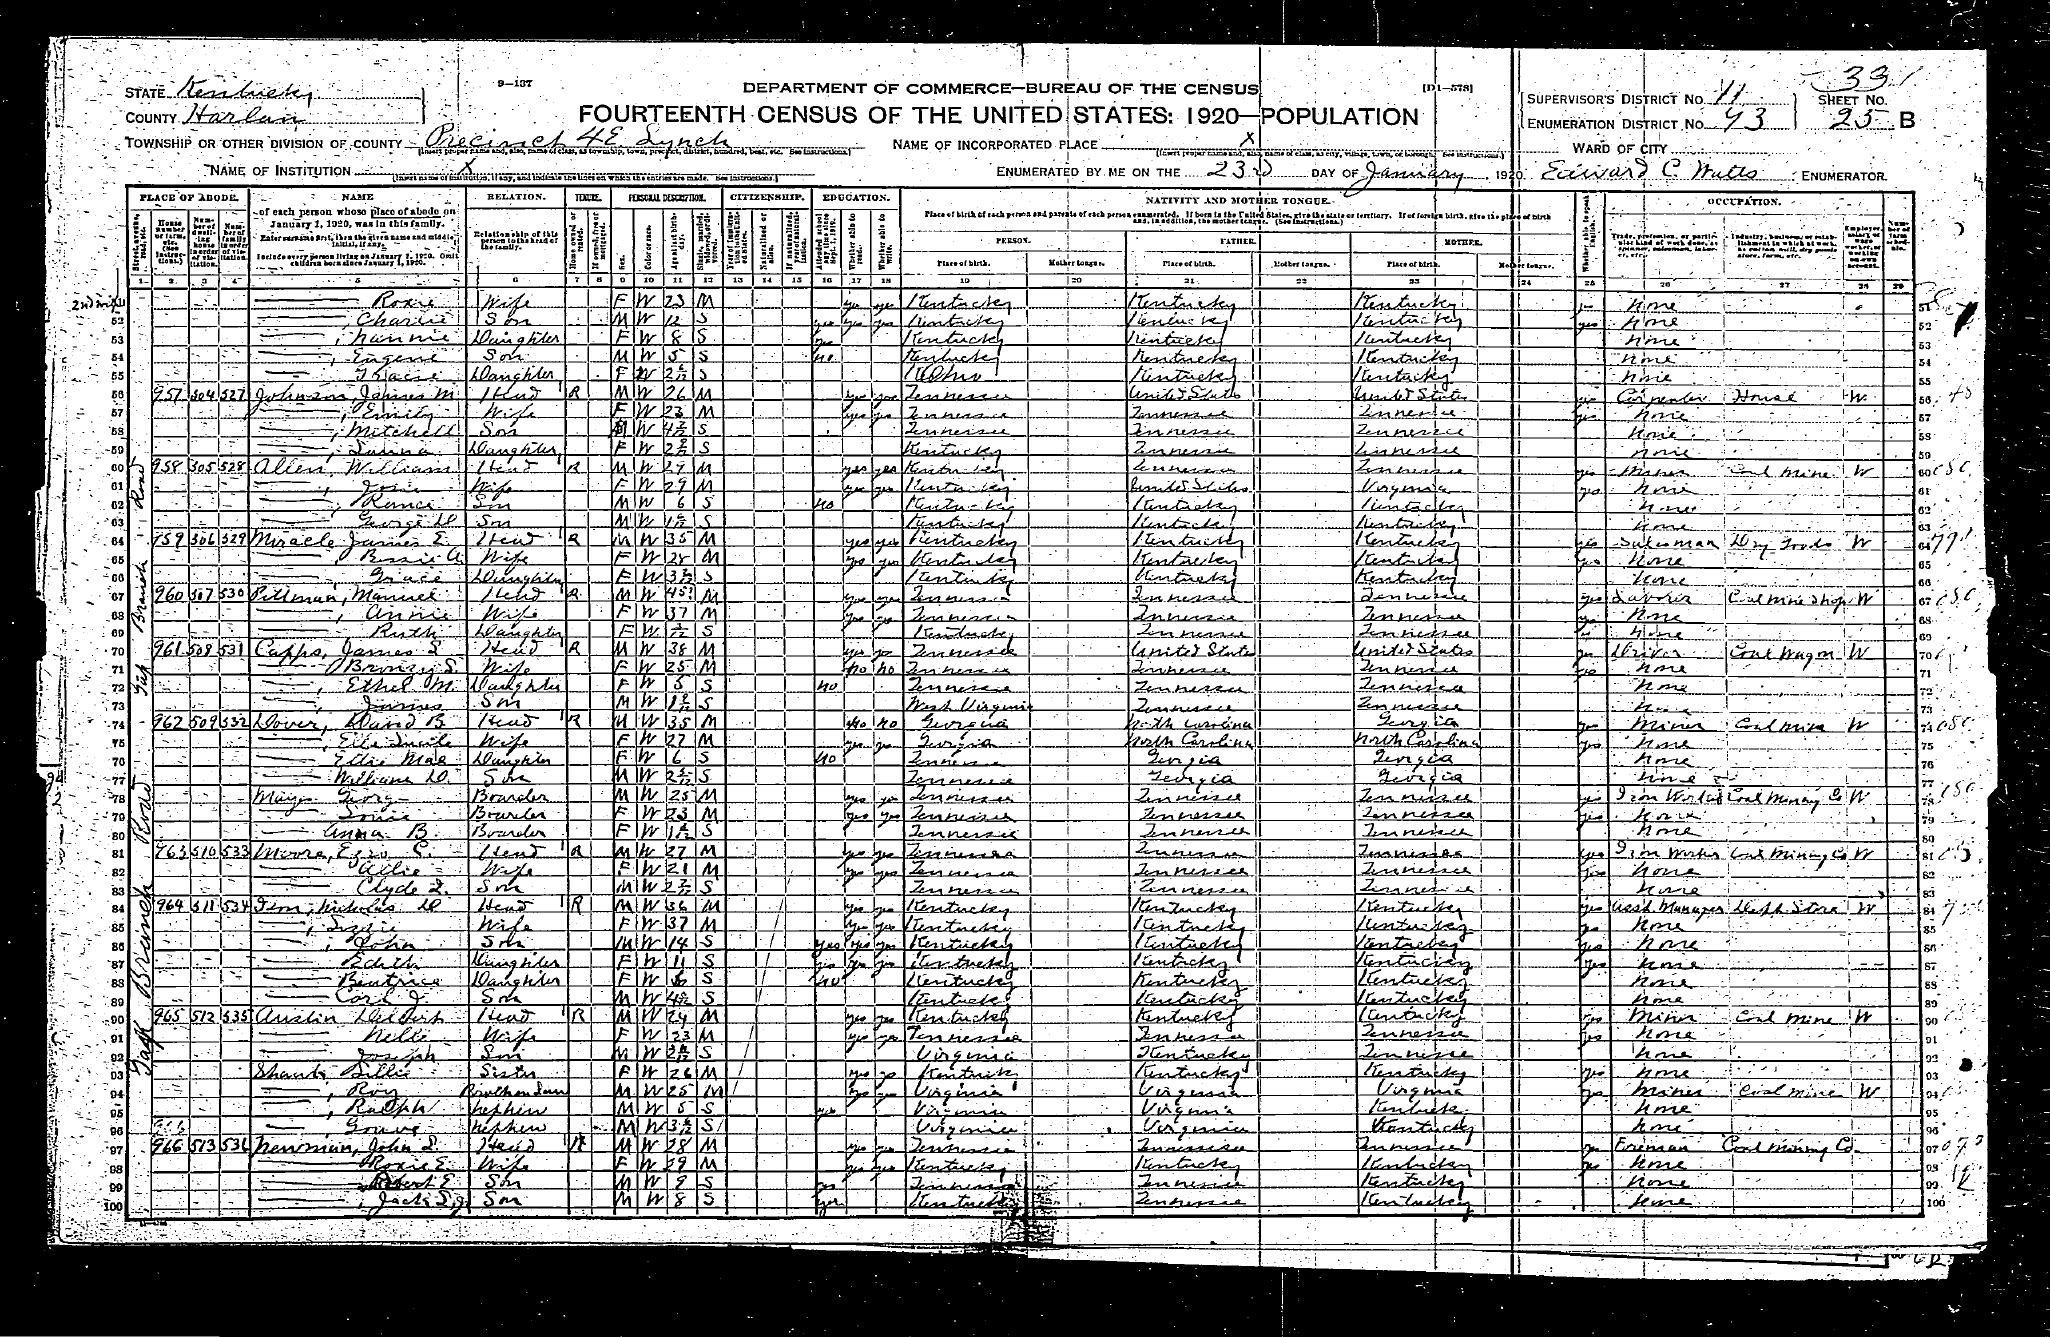 1920 Census Sheet